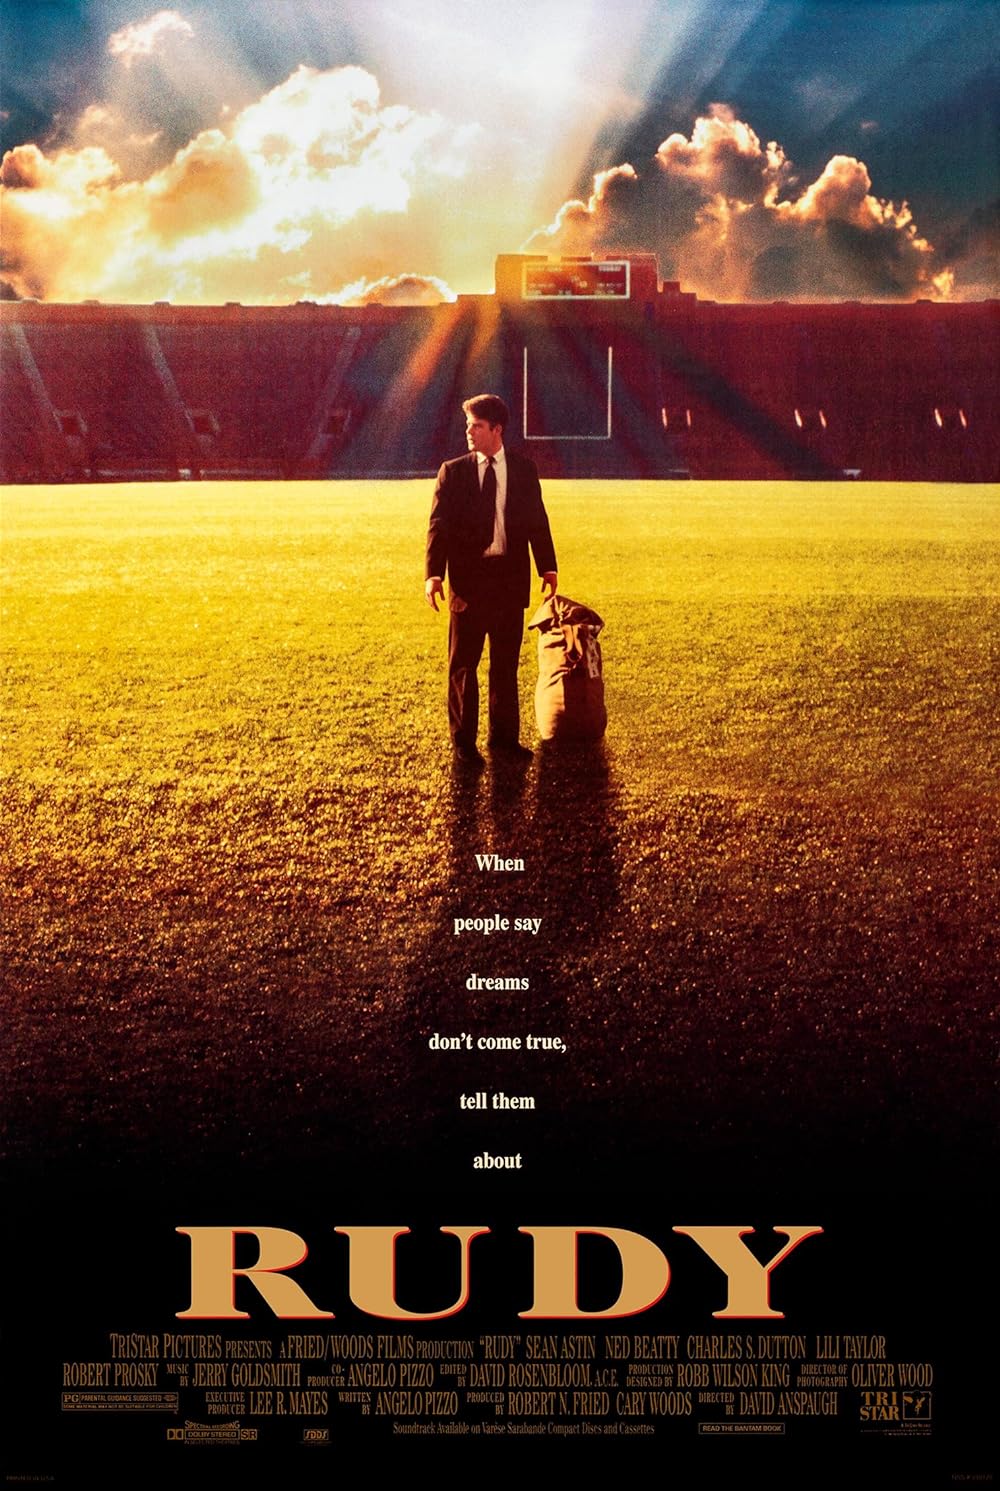 Rudy là phim về sinh viên Mỹ được lấy bối cảnh năm 1993 với sự góp mặt của Sean Austin “Rudy” - người đến từ một thị trấn nhỏ, nơi mà mọi người chỉ bận tâm đến công việc kinh doanh của riêng họ